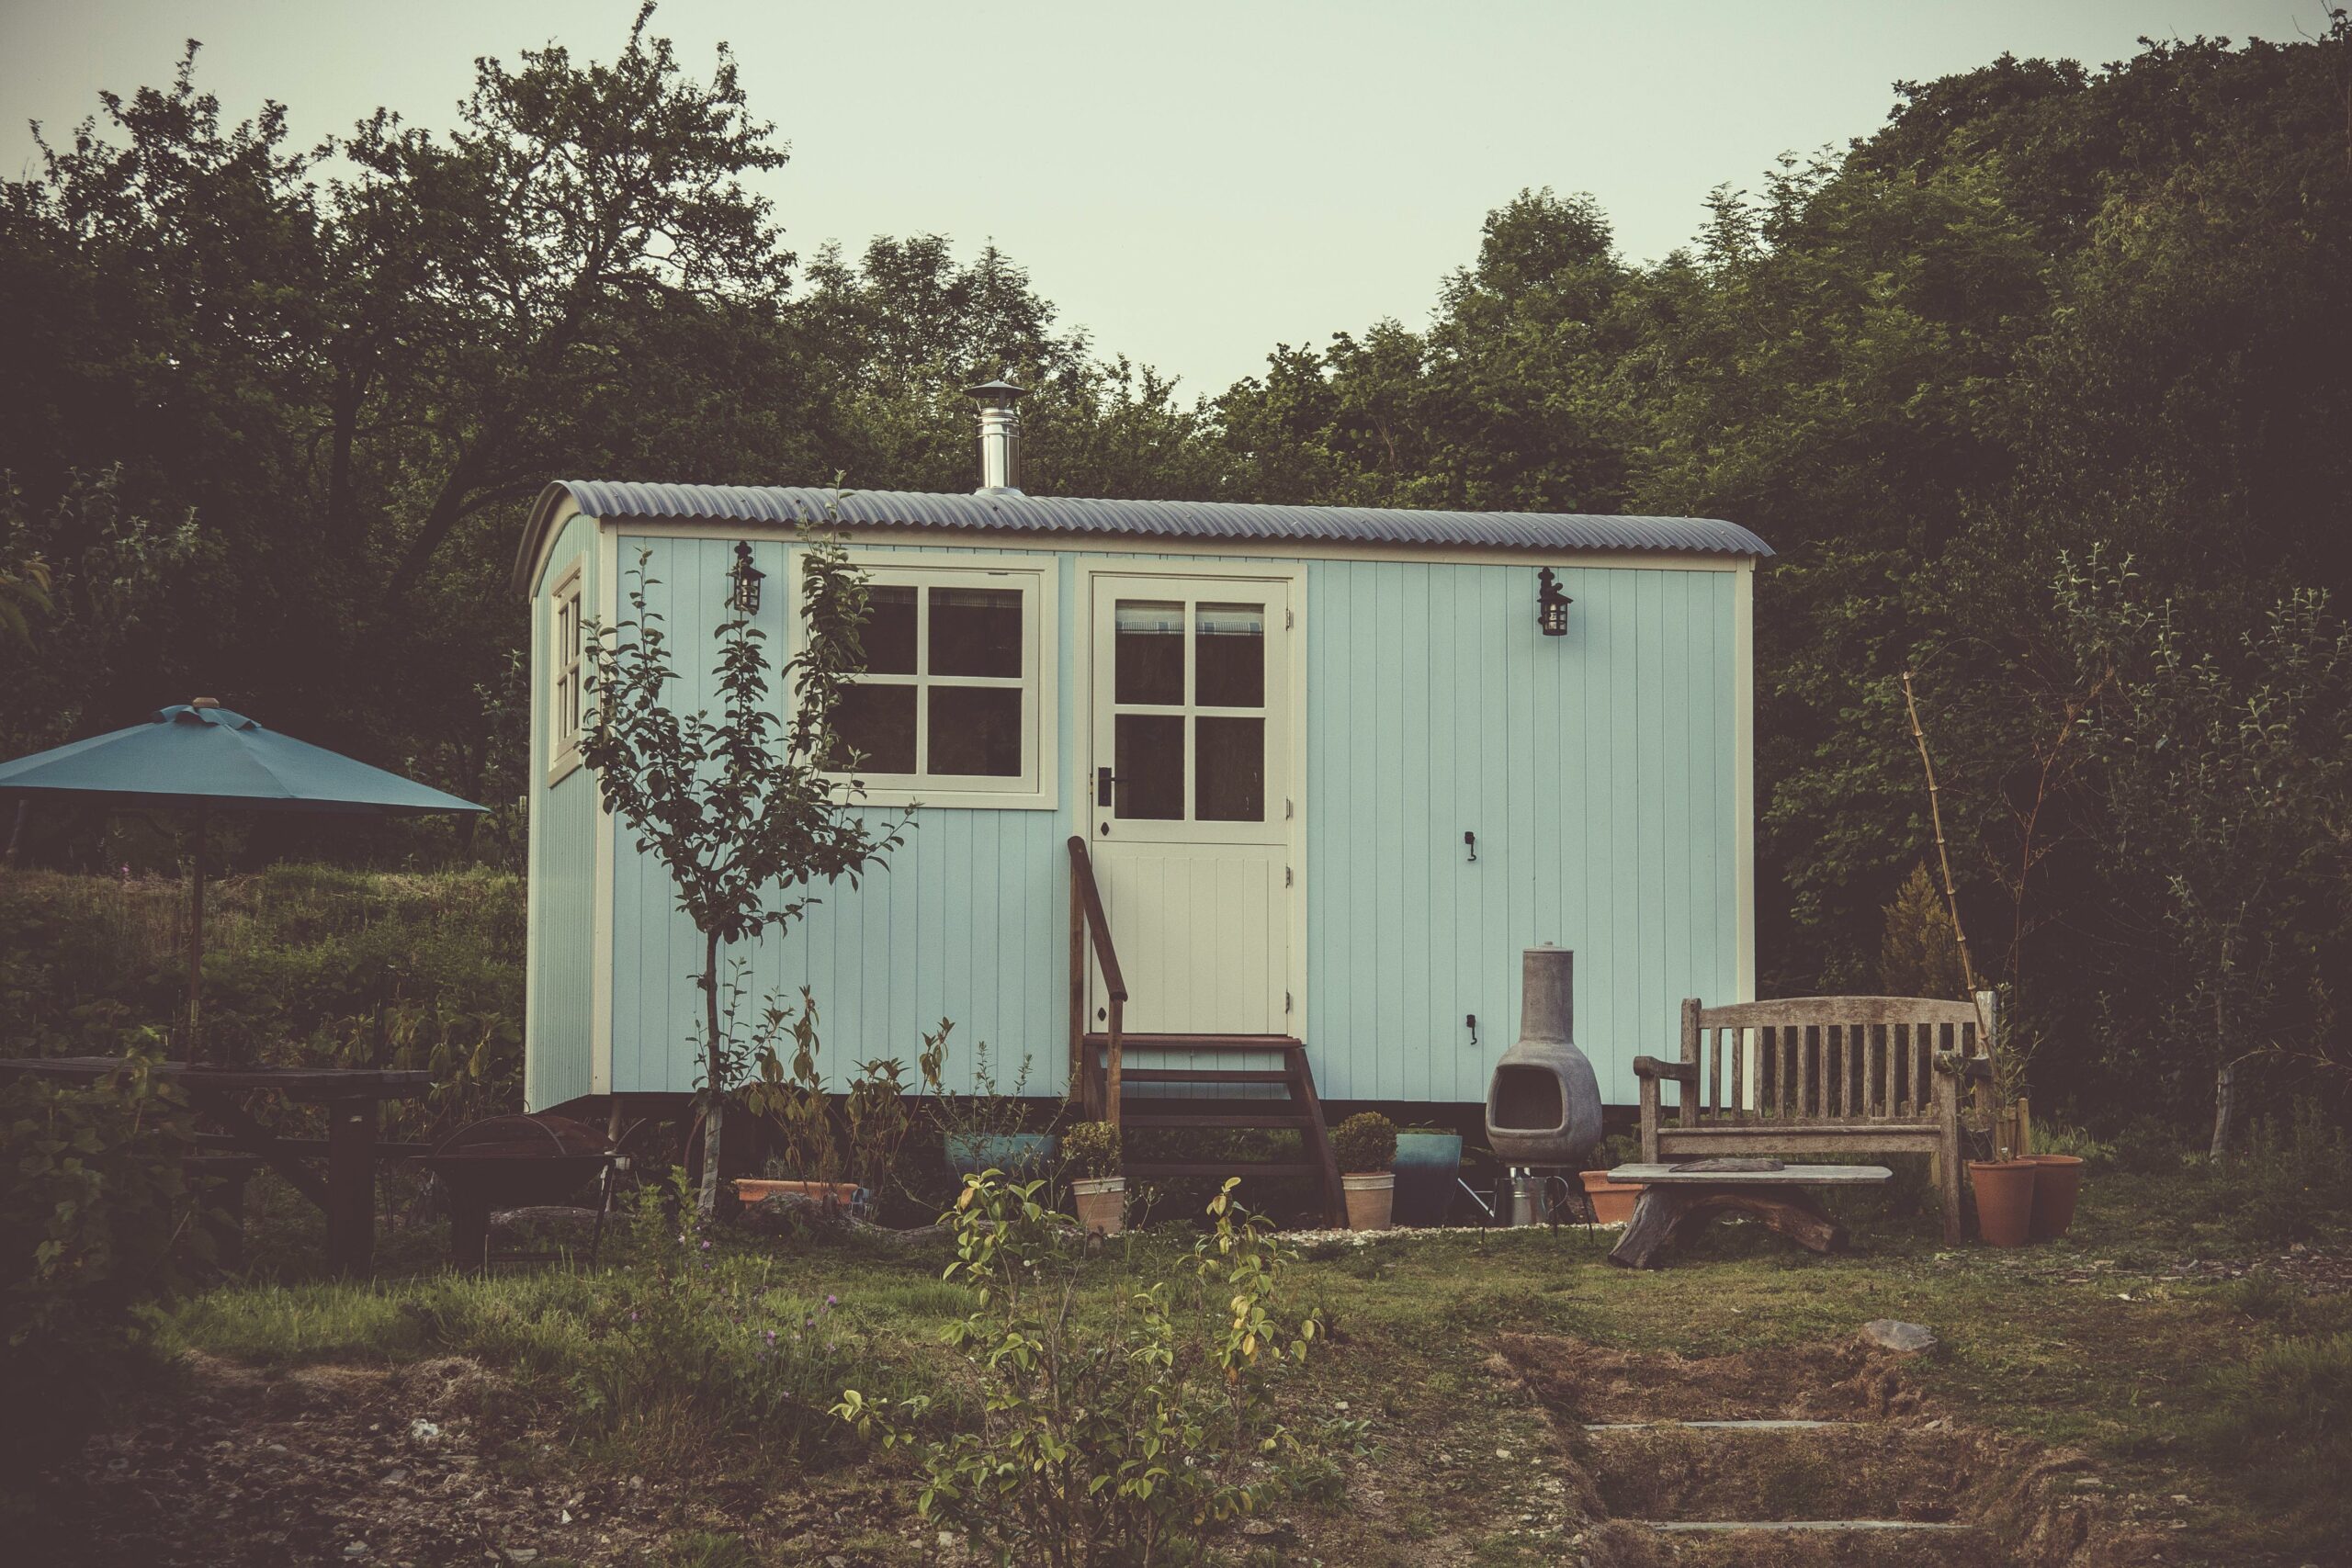 Une petite maison bleue à la campagne avec un jardin négligé et divers objets ménagers à l'extérieur, évoquant un cadre rustique et isolé.